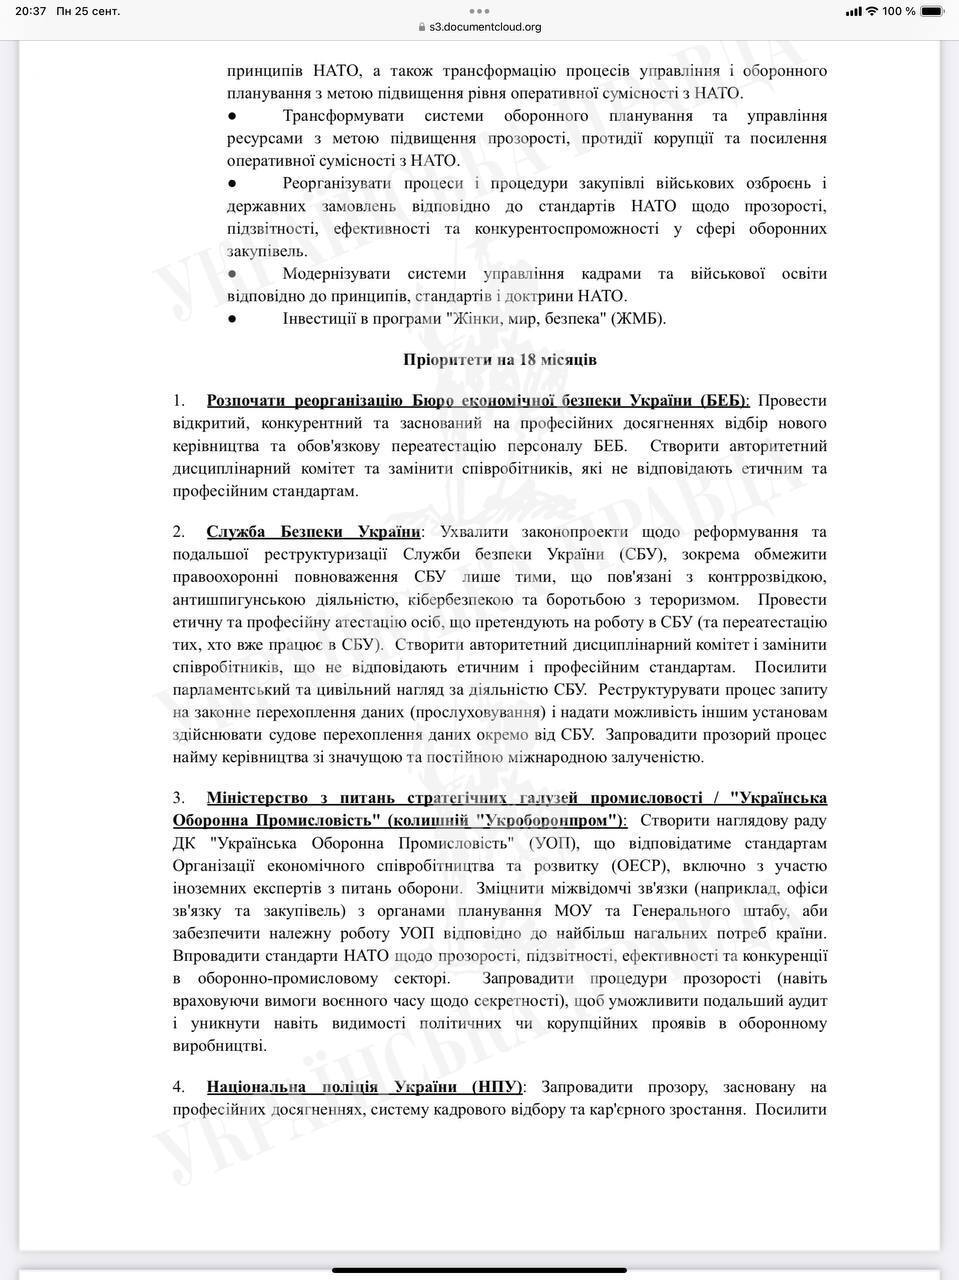 Українська влада отримала лист з переліком реформ, які має зробити для подальшого отримання допомоги від США – ЗМІ